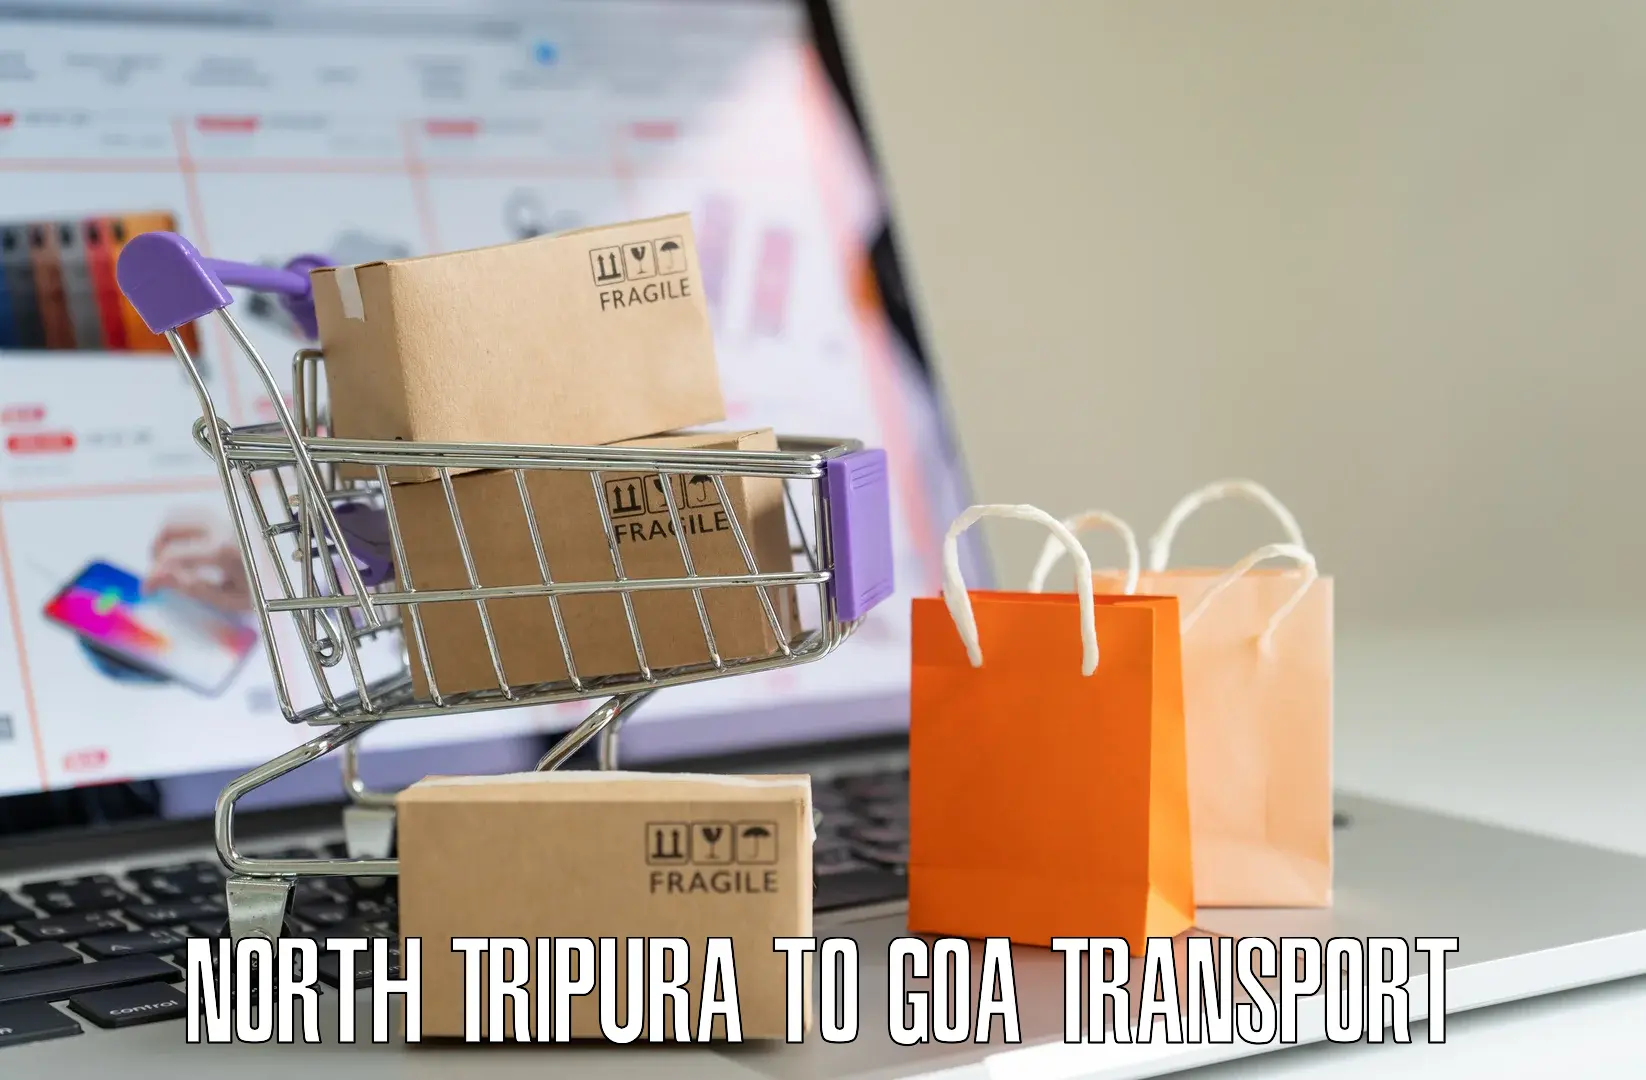 Bike transfer North Tripura to Goa University